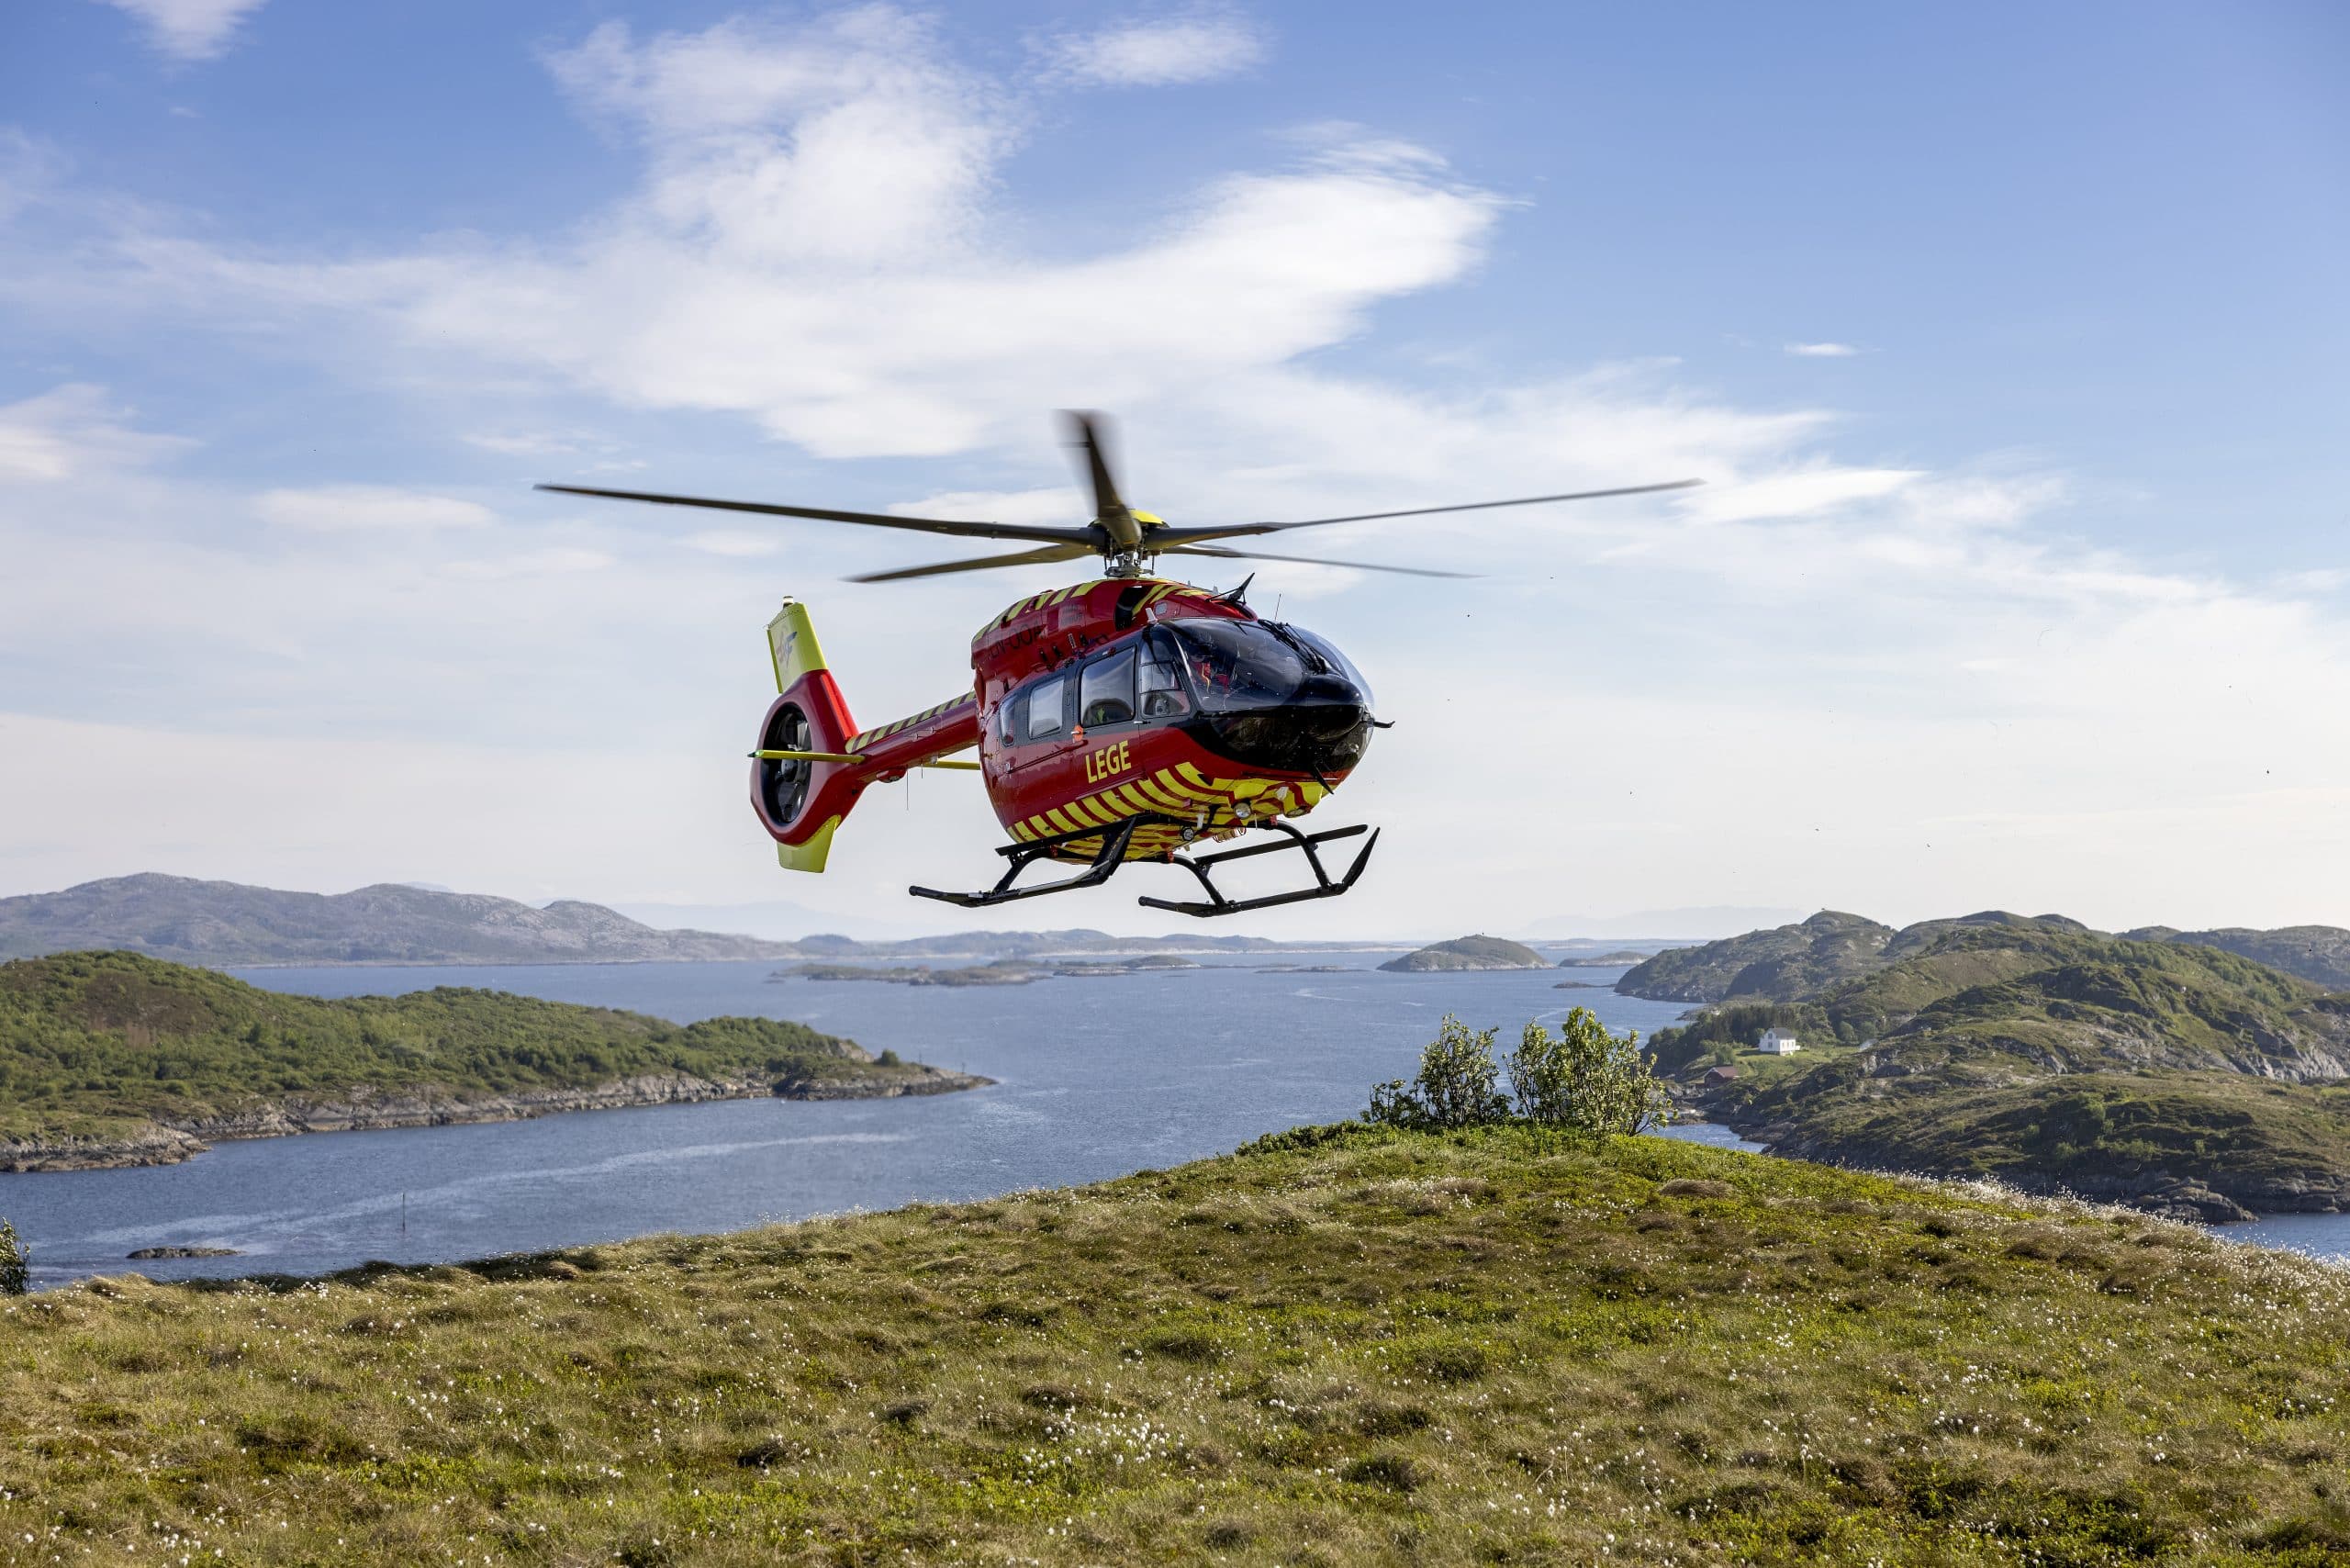 Norsk Luftambulanse是挪威一家经营直升机空中救护服务的非营利基金会。